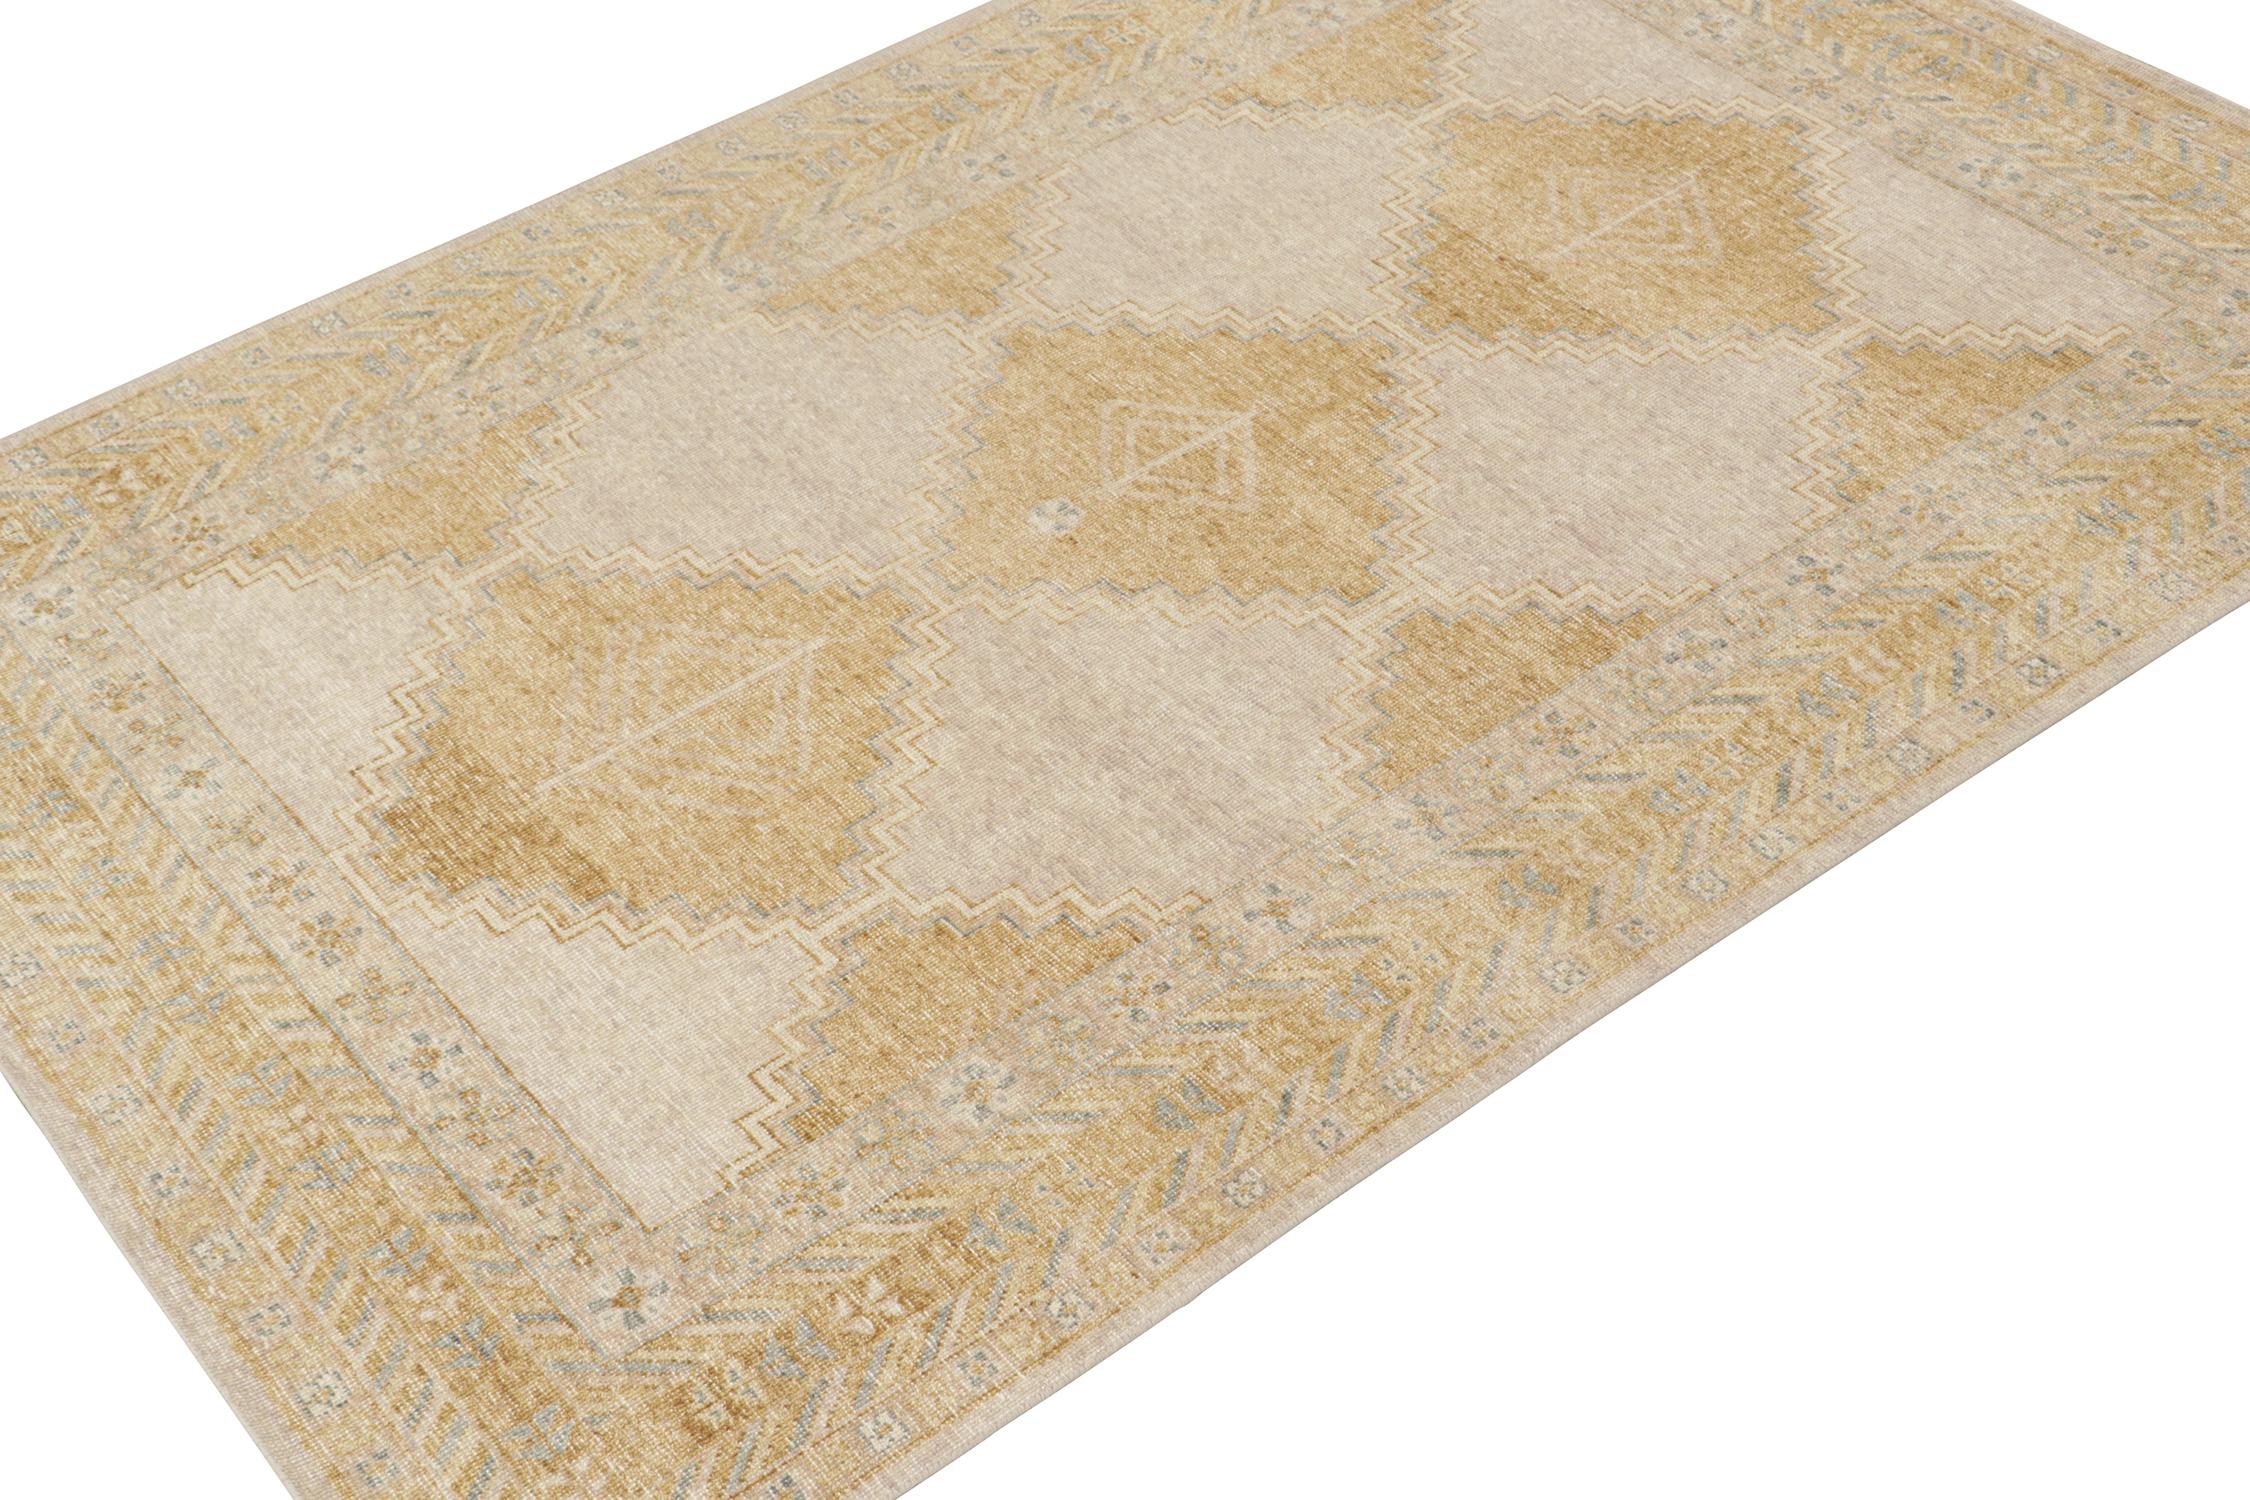 Ce tapis 6x9 est un nouvel ajout à la Collection Homage de Rug & Kilim. Noué à la main en laine et en coton, il reprend le motif d'un tapis tribal ancien dans une nouvelle interprétation de la texture en détresse.

Sur le Design :

On ne peut